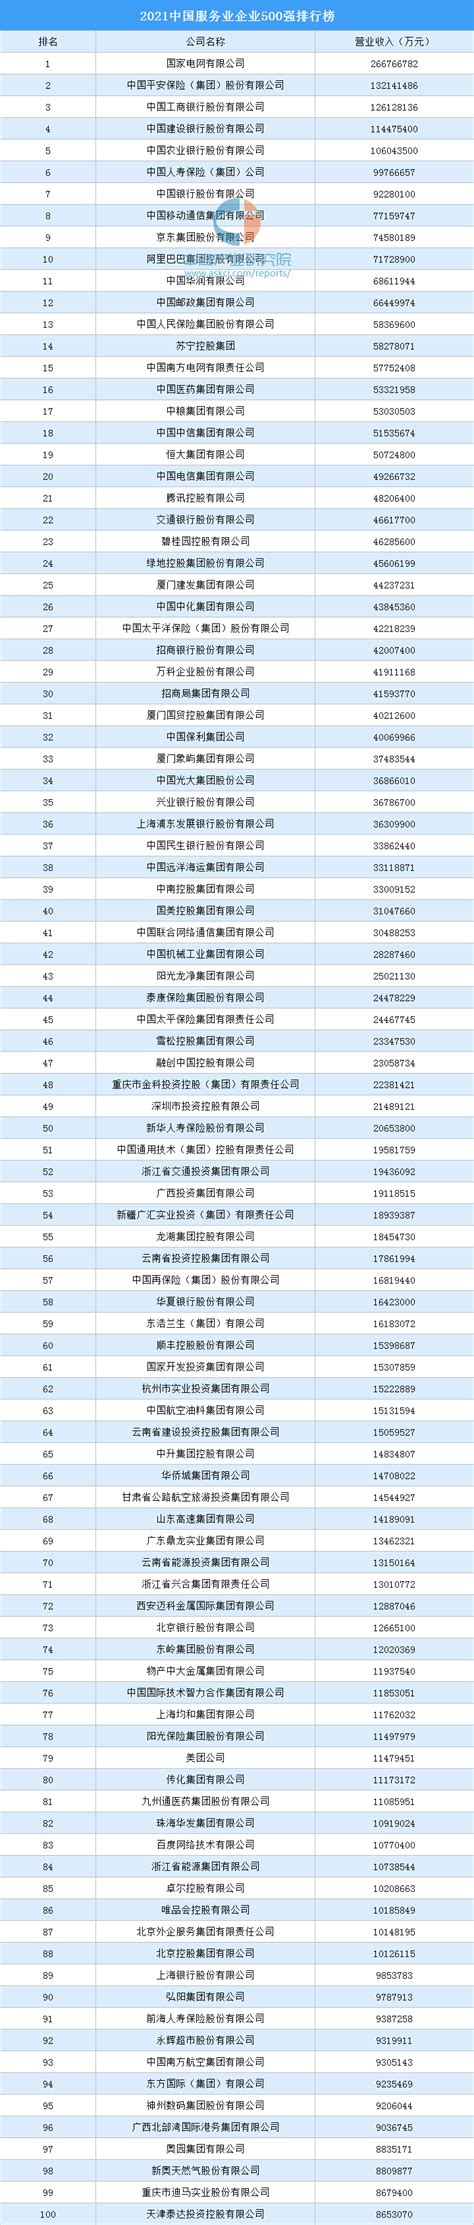 中国服务业企业500强榜单公布 河南共7家企业入围 郑州银行位列榜眼-中华网河南